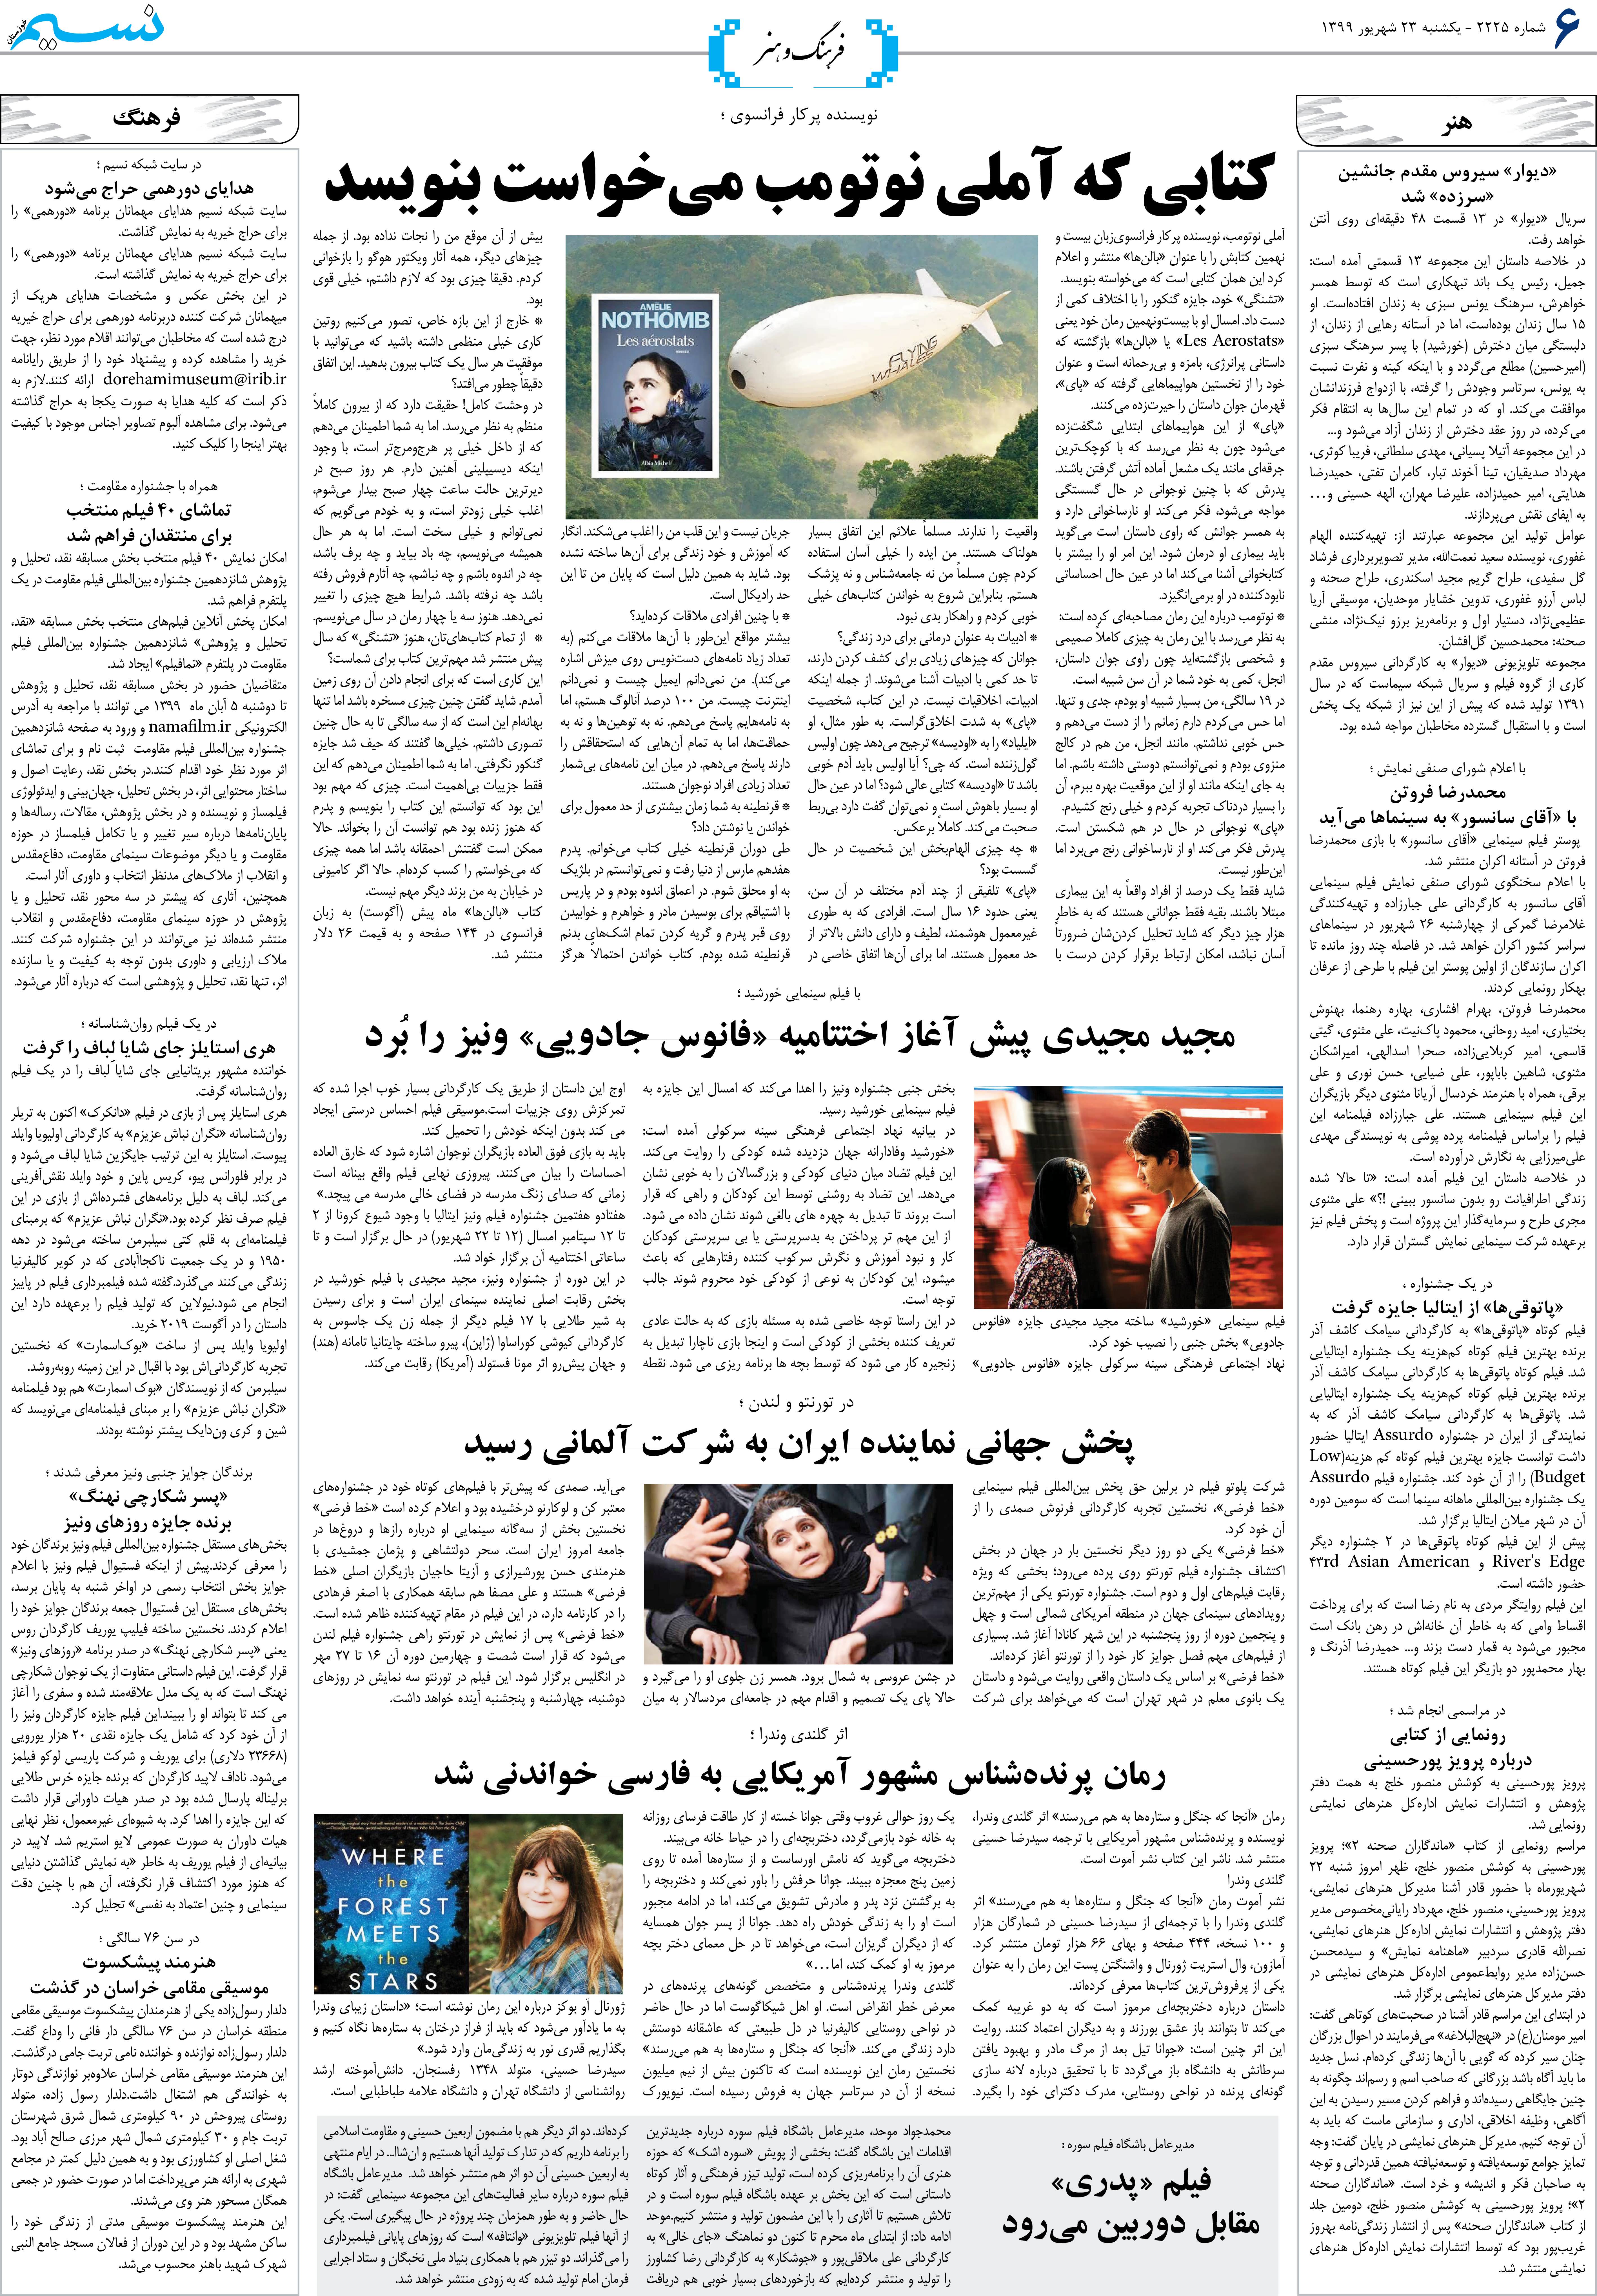 صفحه فرهنگ و هنر روزنامه نسیم شماره 2225